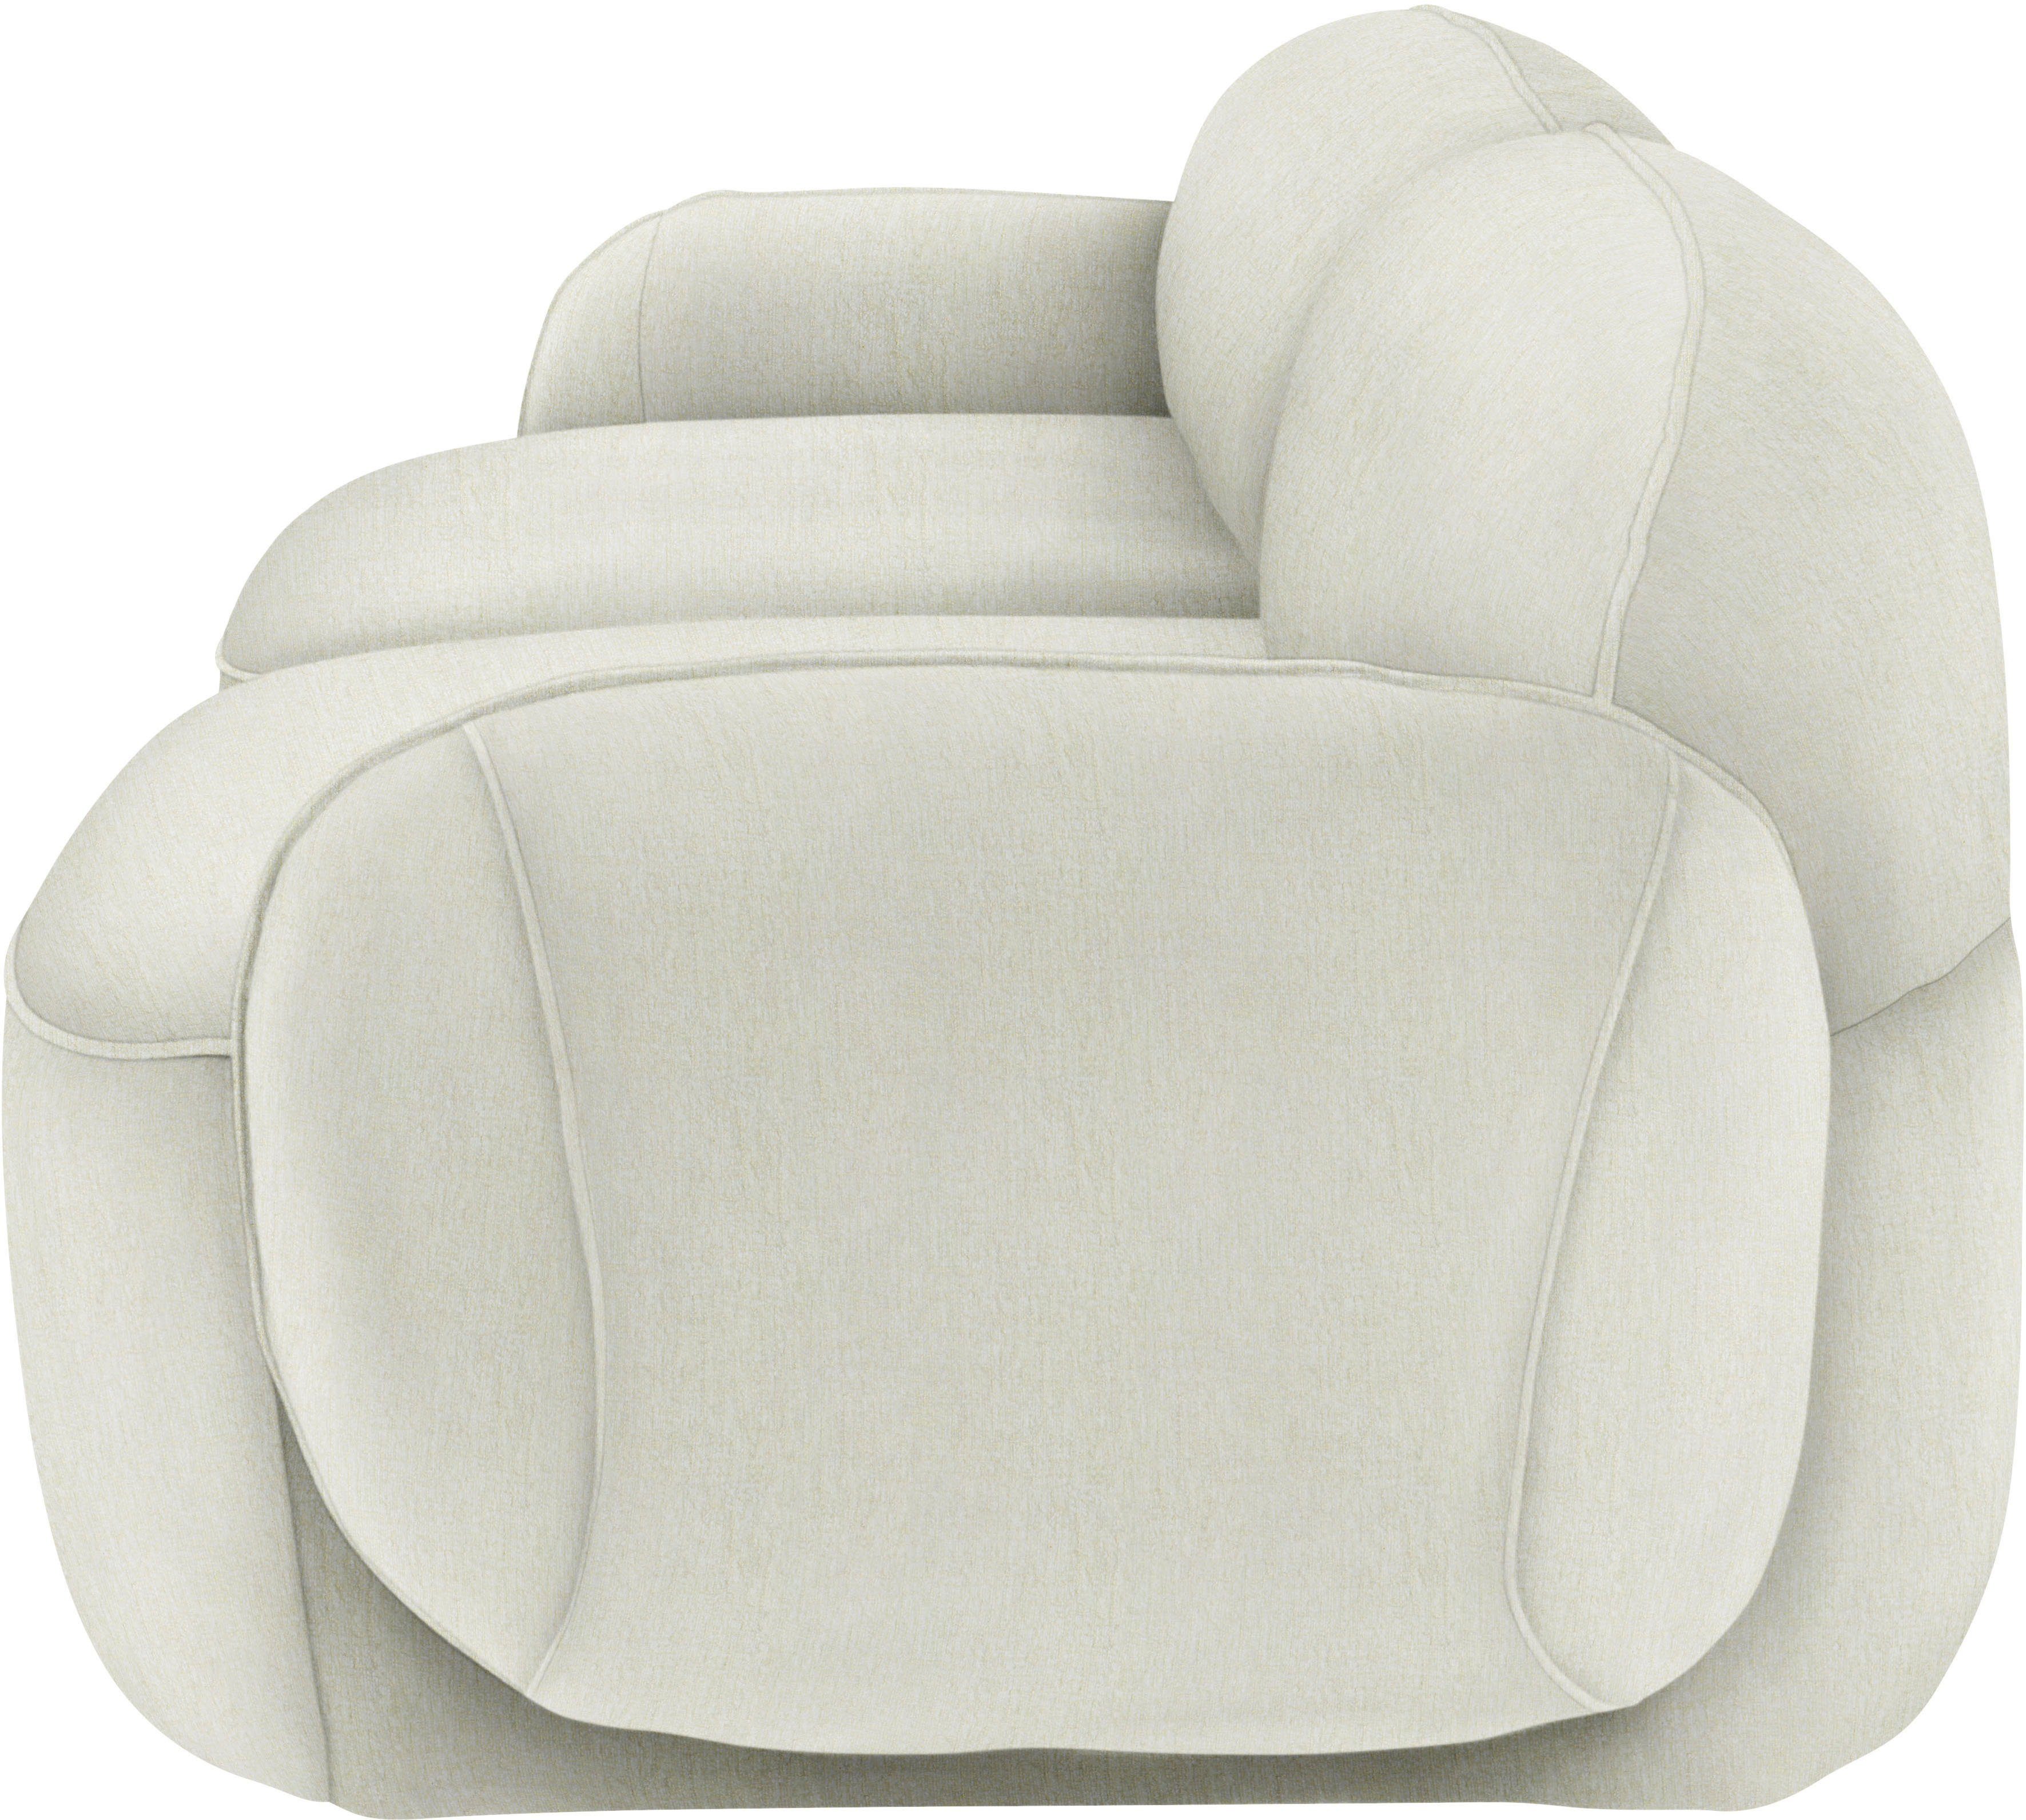 Memoryschaum, furninova 2,5-Sitzer im durch skandinavischen Design Bubble, komfortabel